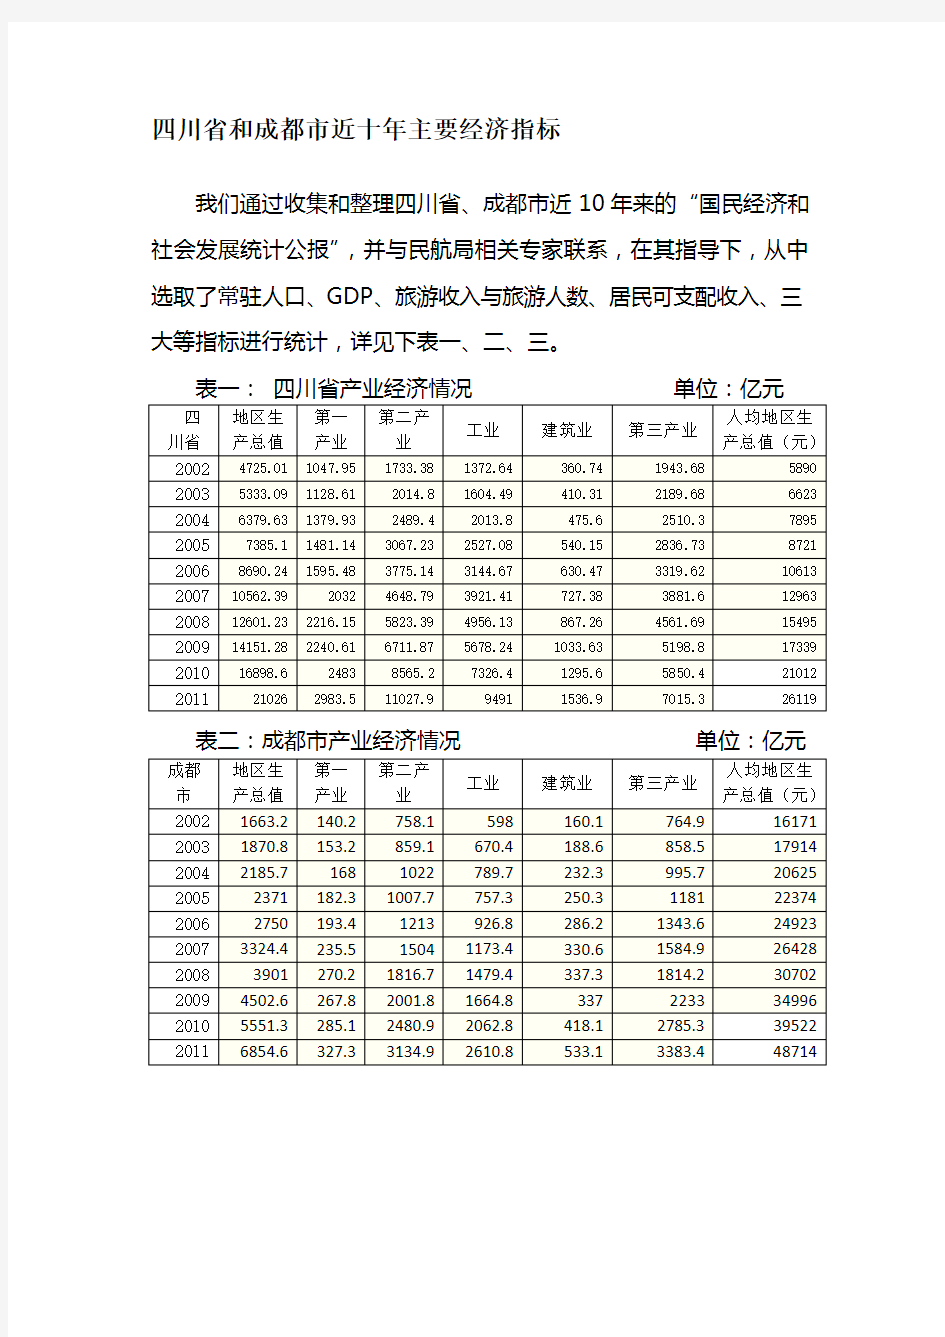 四川省和成都市近十年主要经济指标